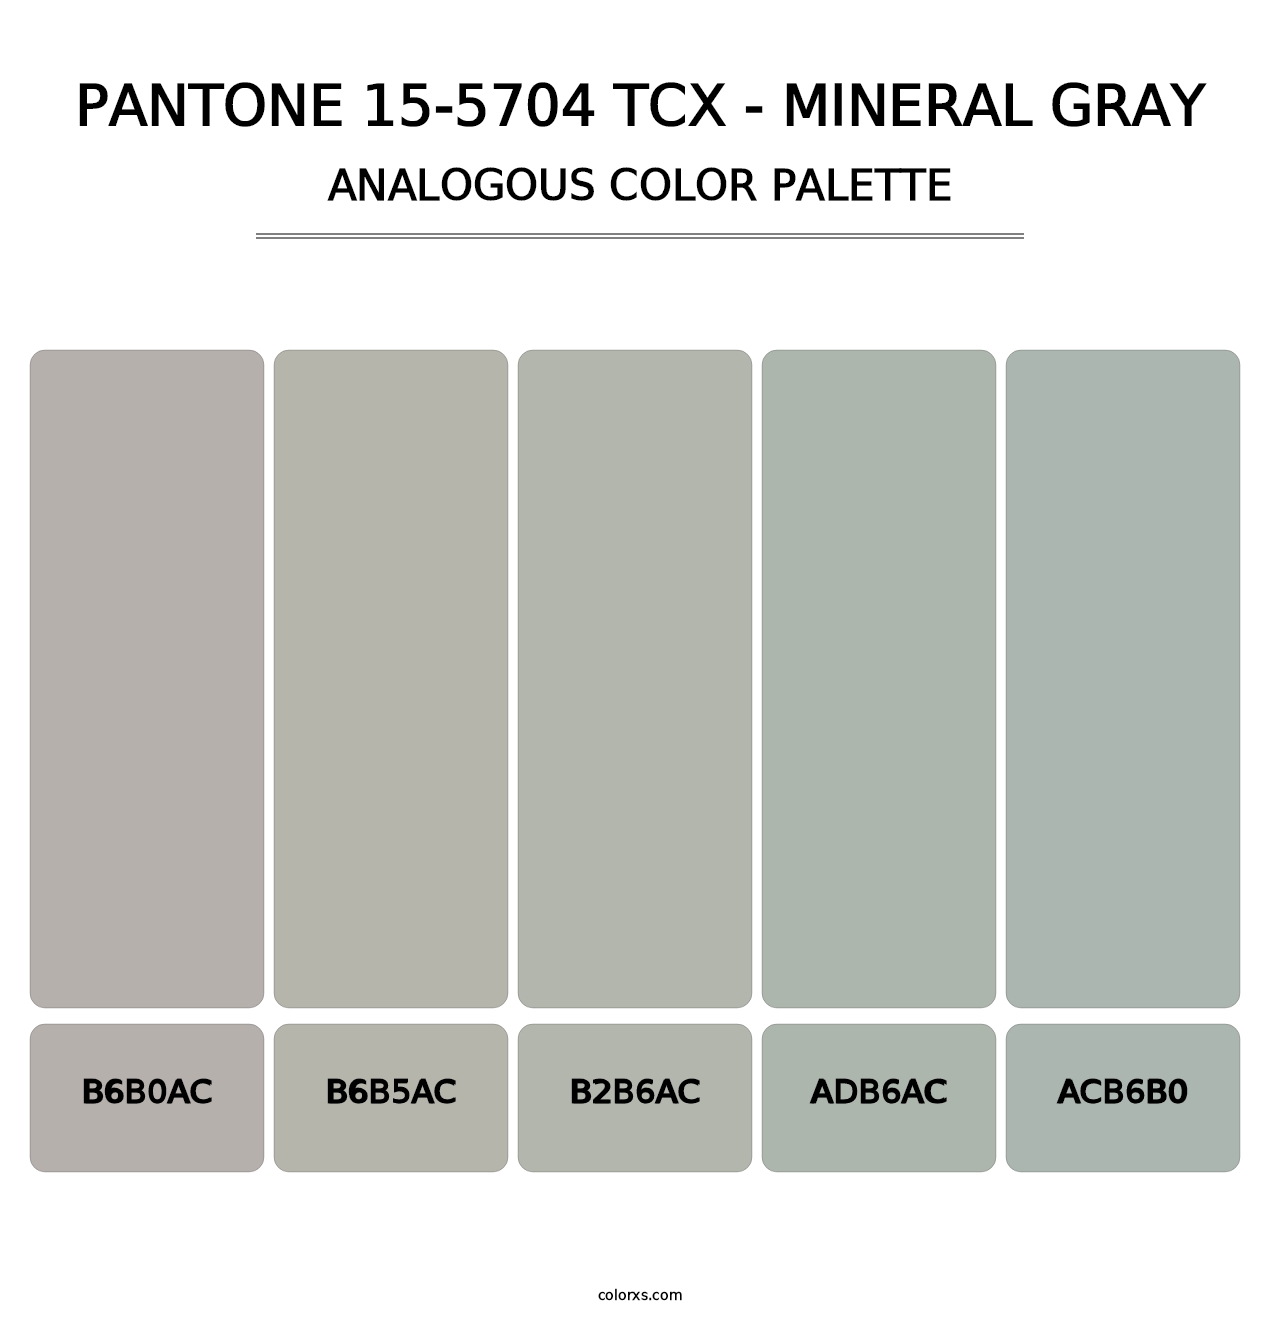 PANTONE 15-5704 TCX - Mineral Gray - Analogous Color Palette